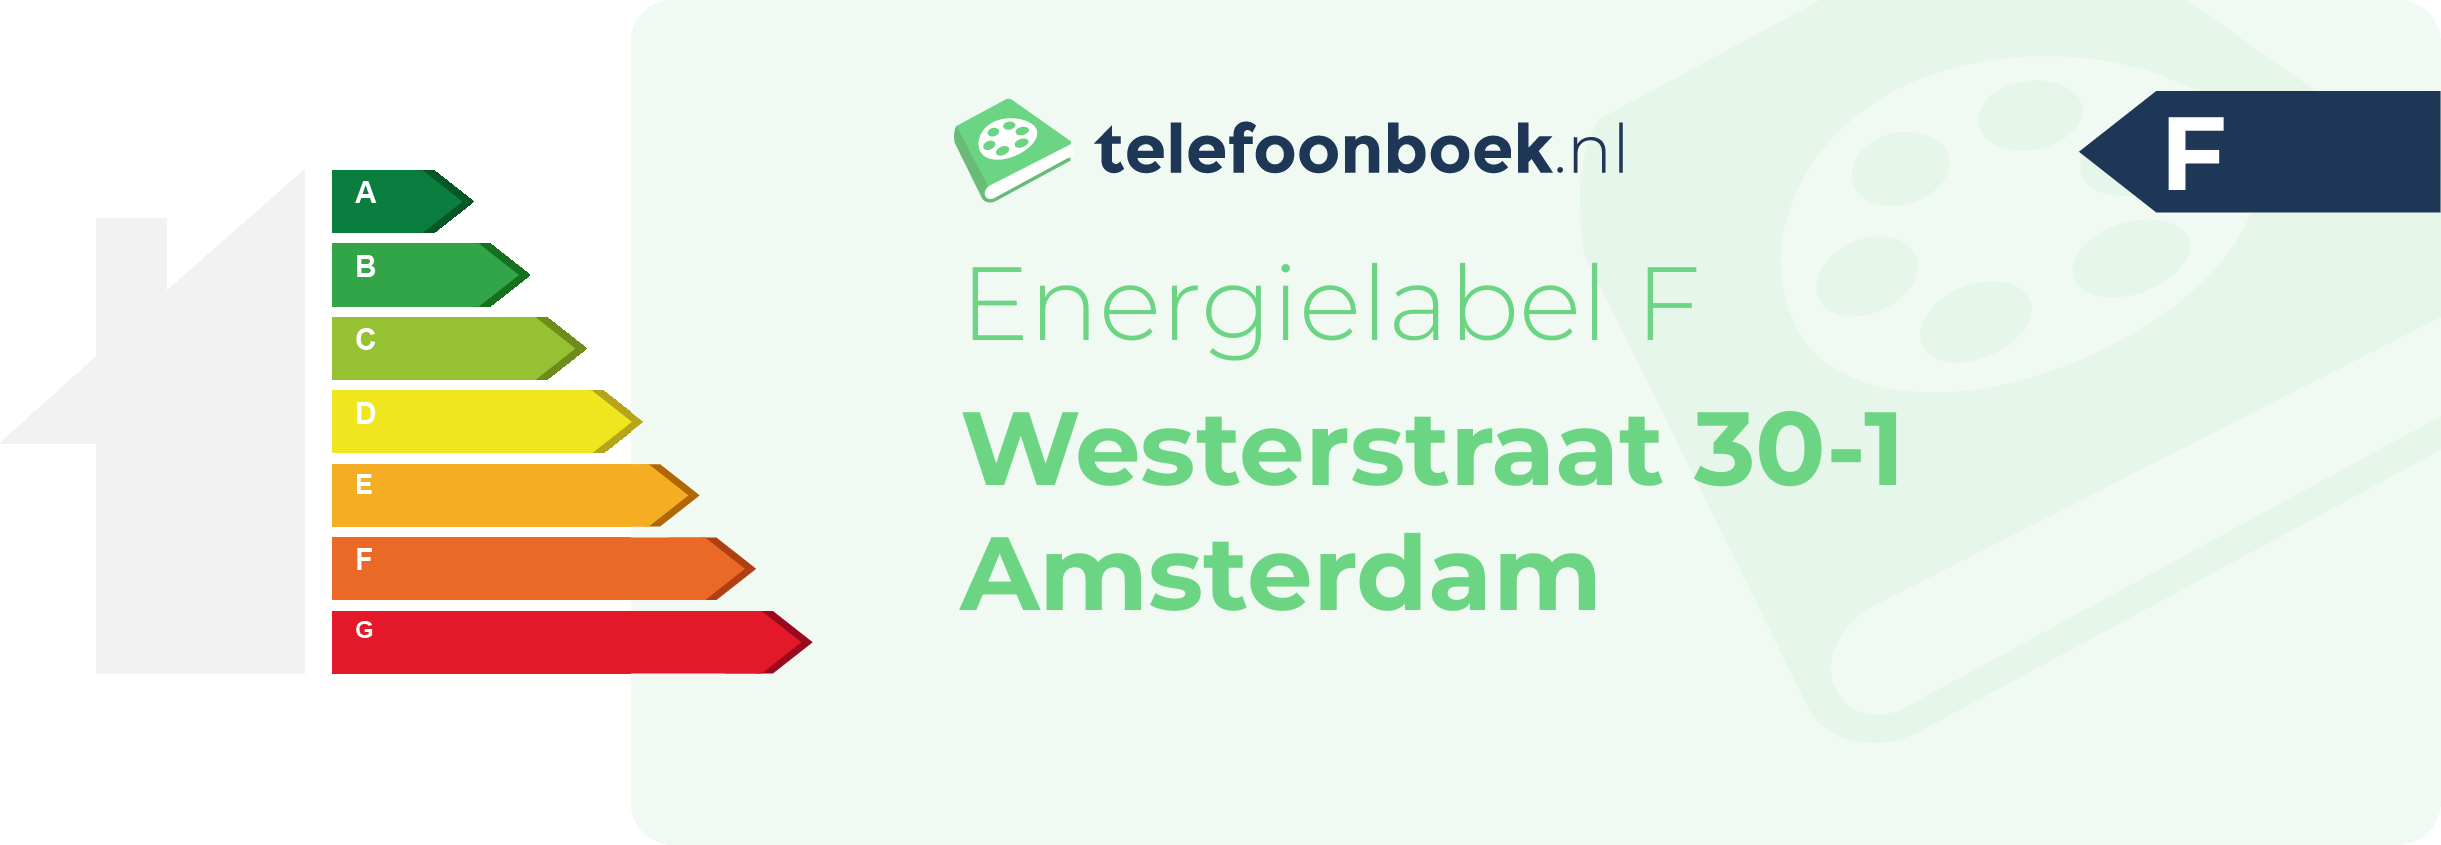 Energielabel Westerstraat 30-1 Amsterdam